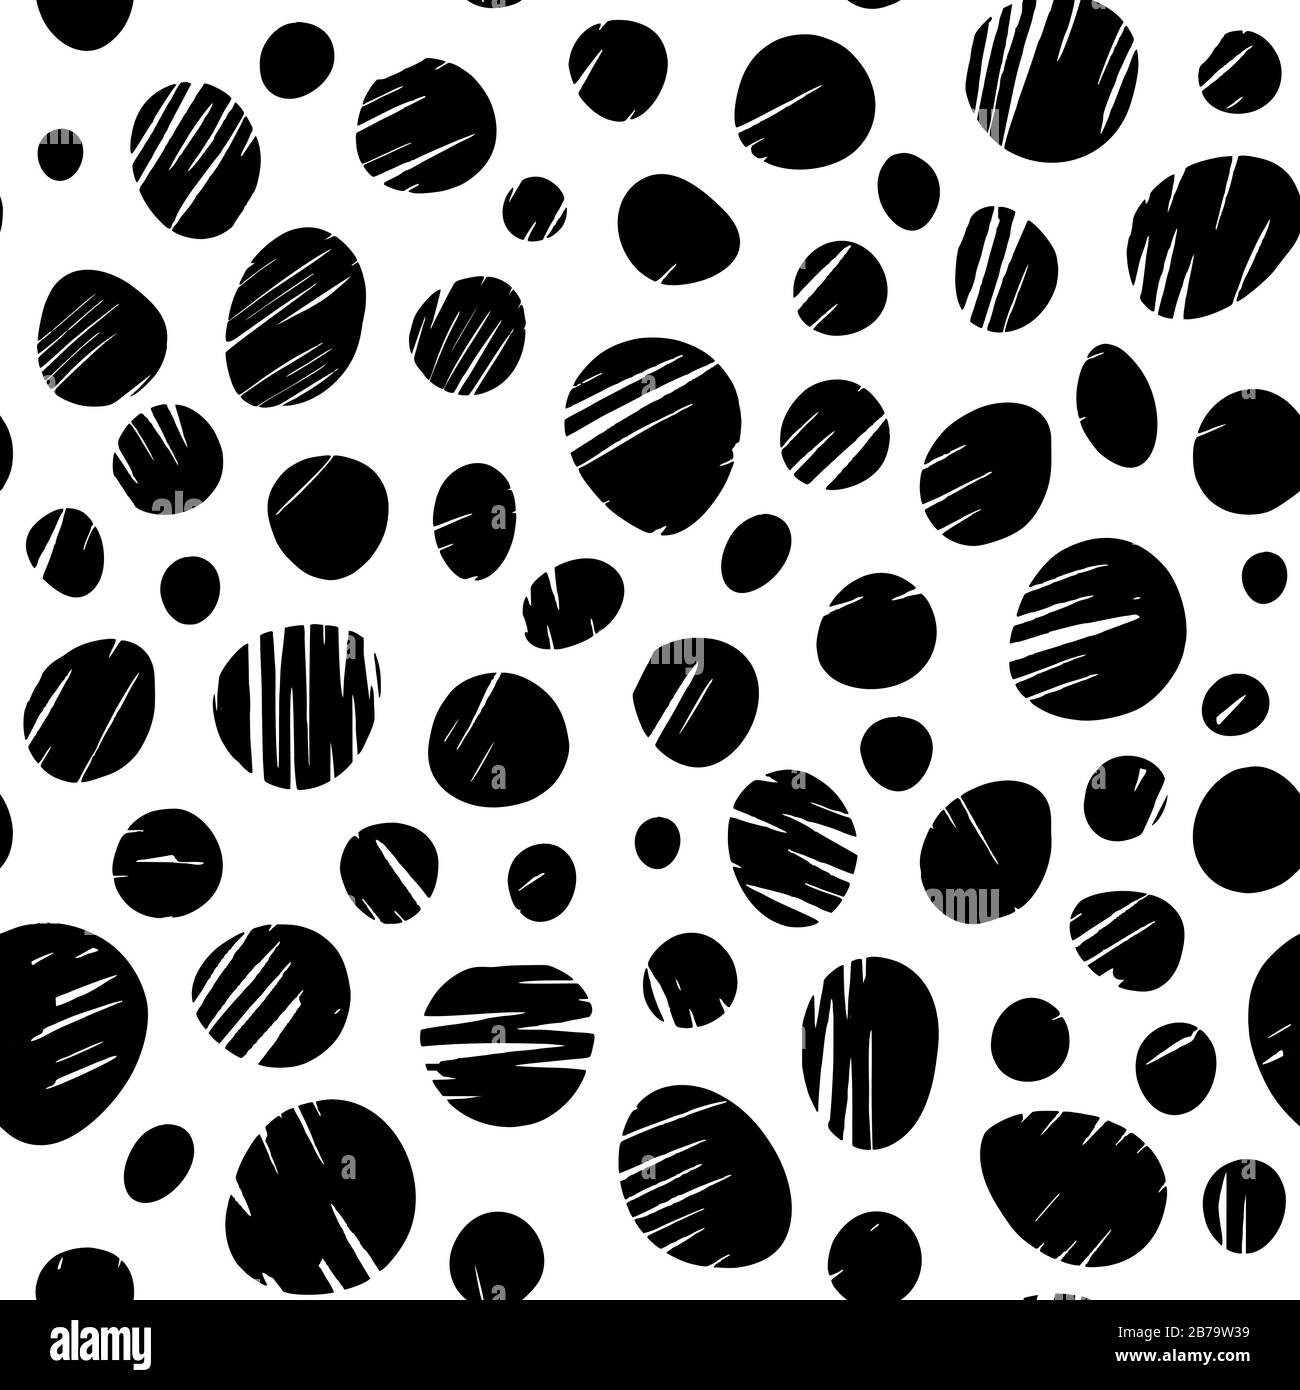 Tier-inspirierter Druck mit monochromatischen schwarzen, handgezeichneten Strichen digitalisierte Textur auf weißem Hintergrund nahtloses EPS-Muster auf der Oberfläche Stock Vektor